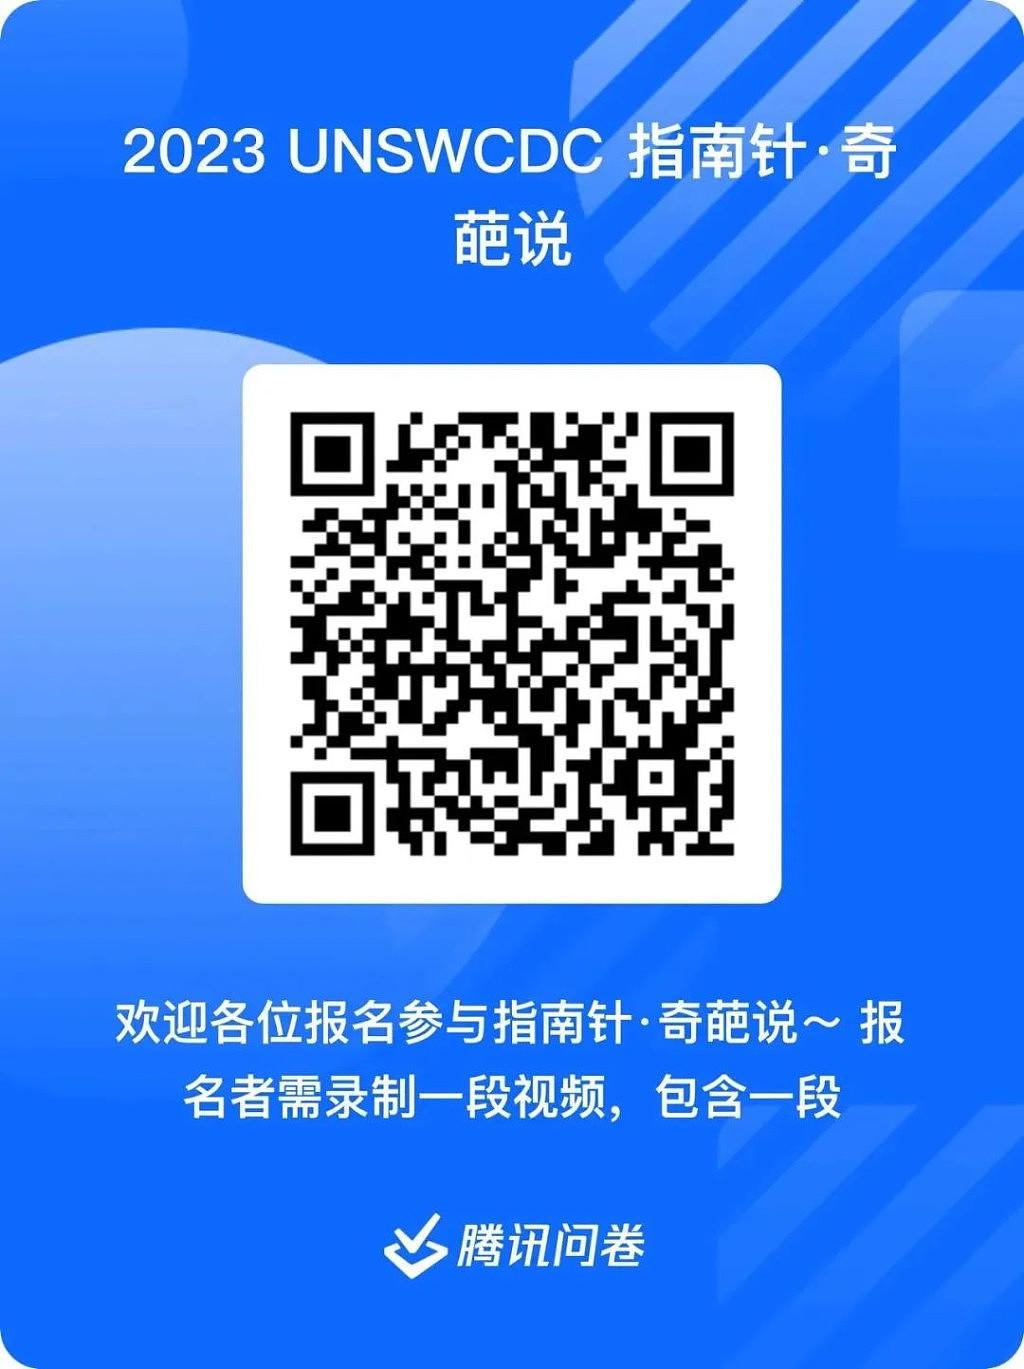 WeChat Image_20230701150348.jpg,0